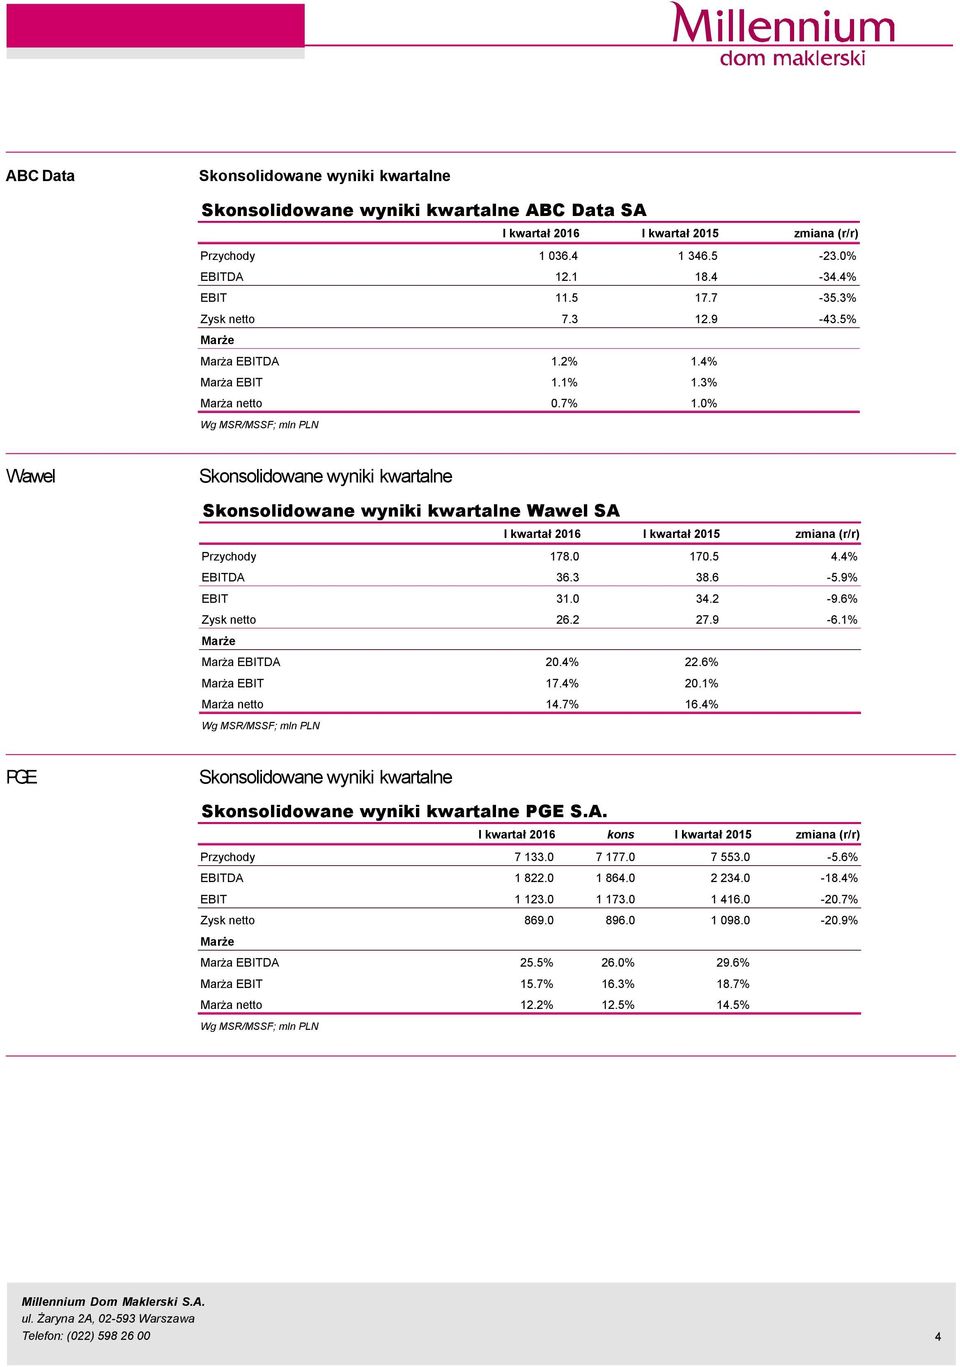 9% EBIT 31. 34.2-9.6% Zysk netto 26.2 27.9-6.1% Marża EBITDA 2.4% 22.6% Marża EBIT 17.4% 2.1% Marża netto 14.7% 16.4% PGE PGE S.A. Przychody 7 133. 7 177. 7 553. -5.